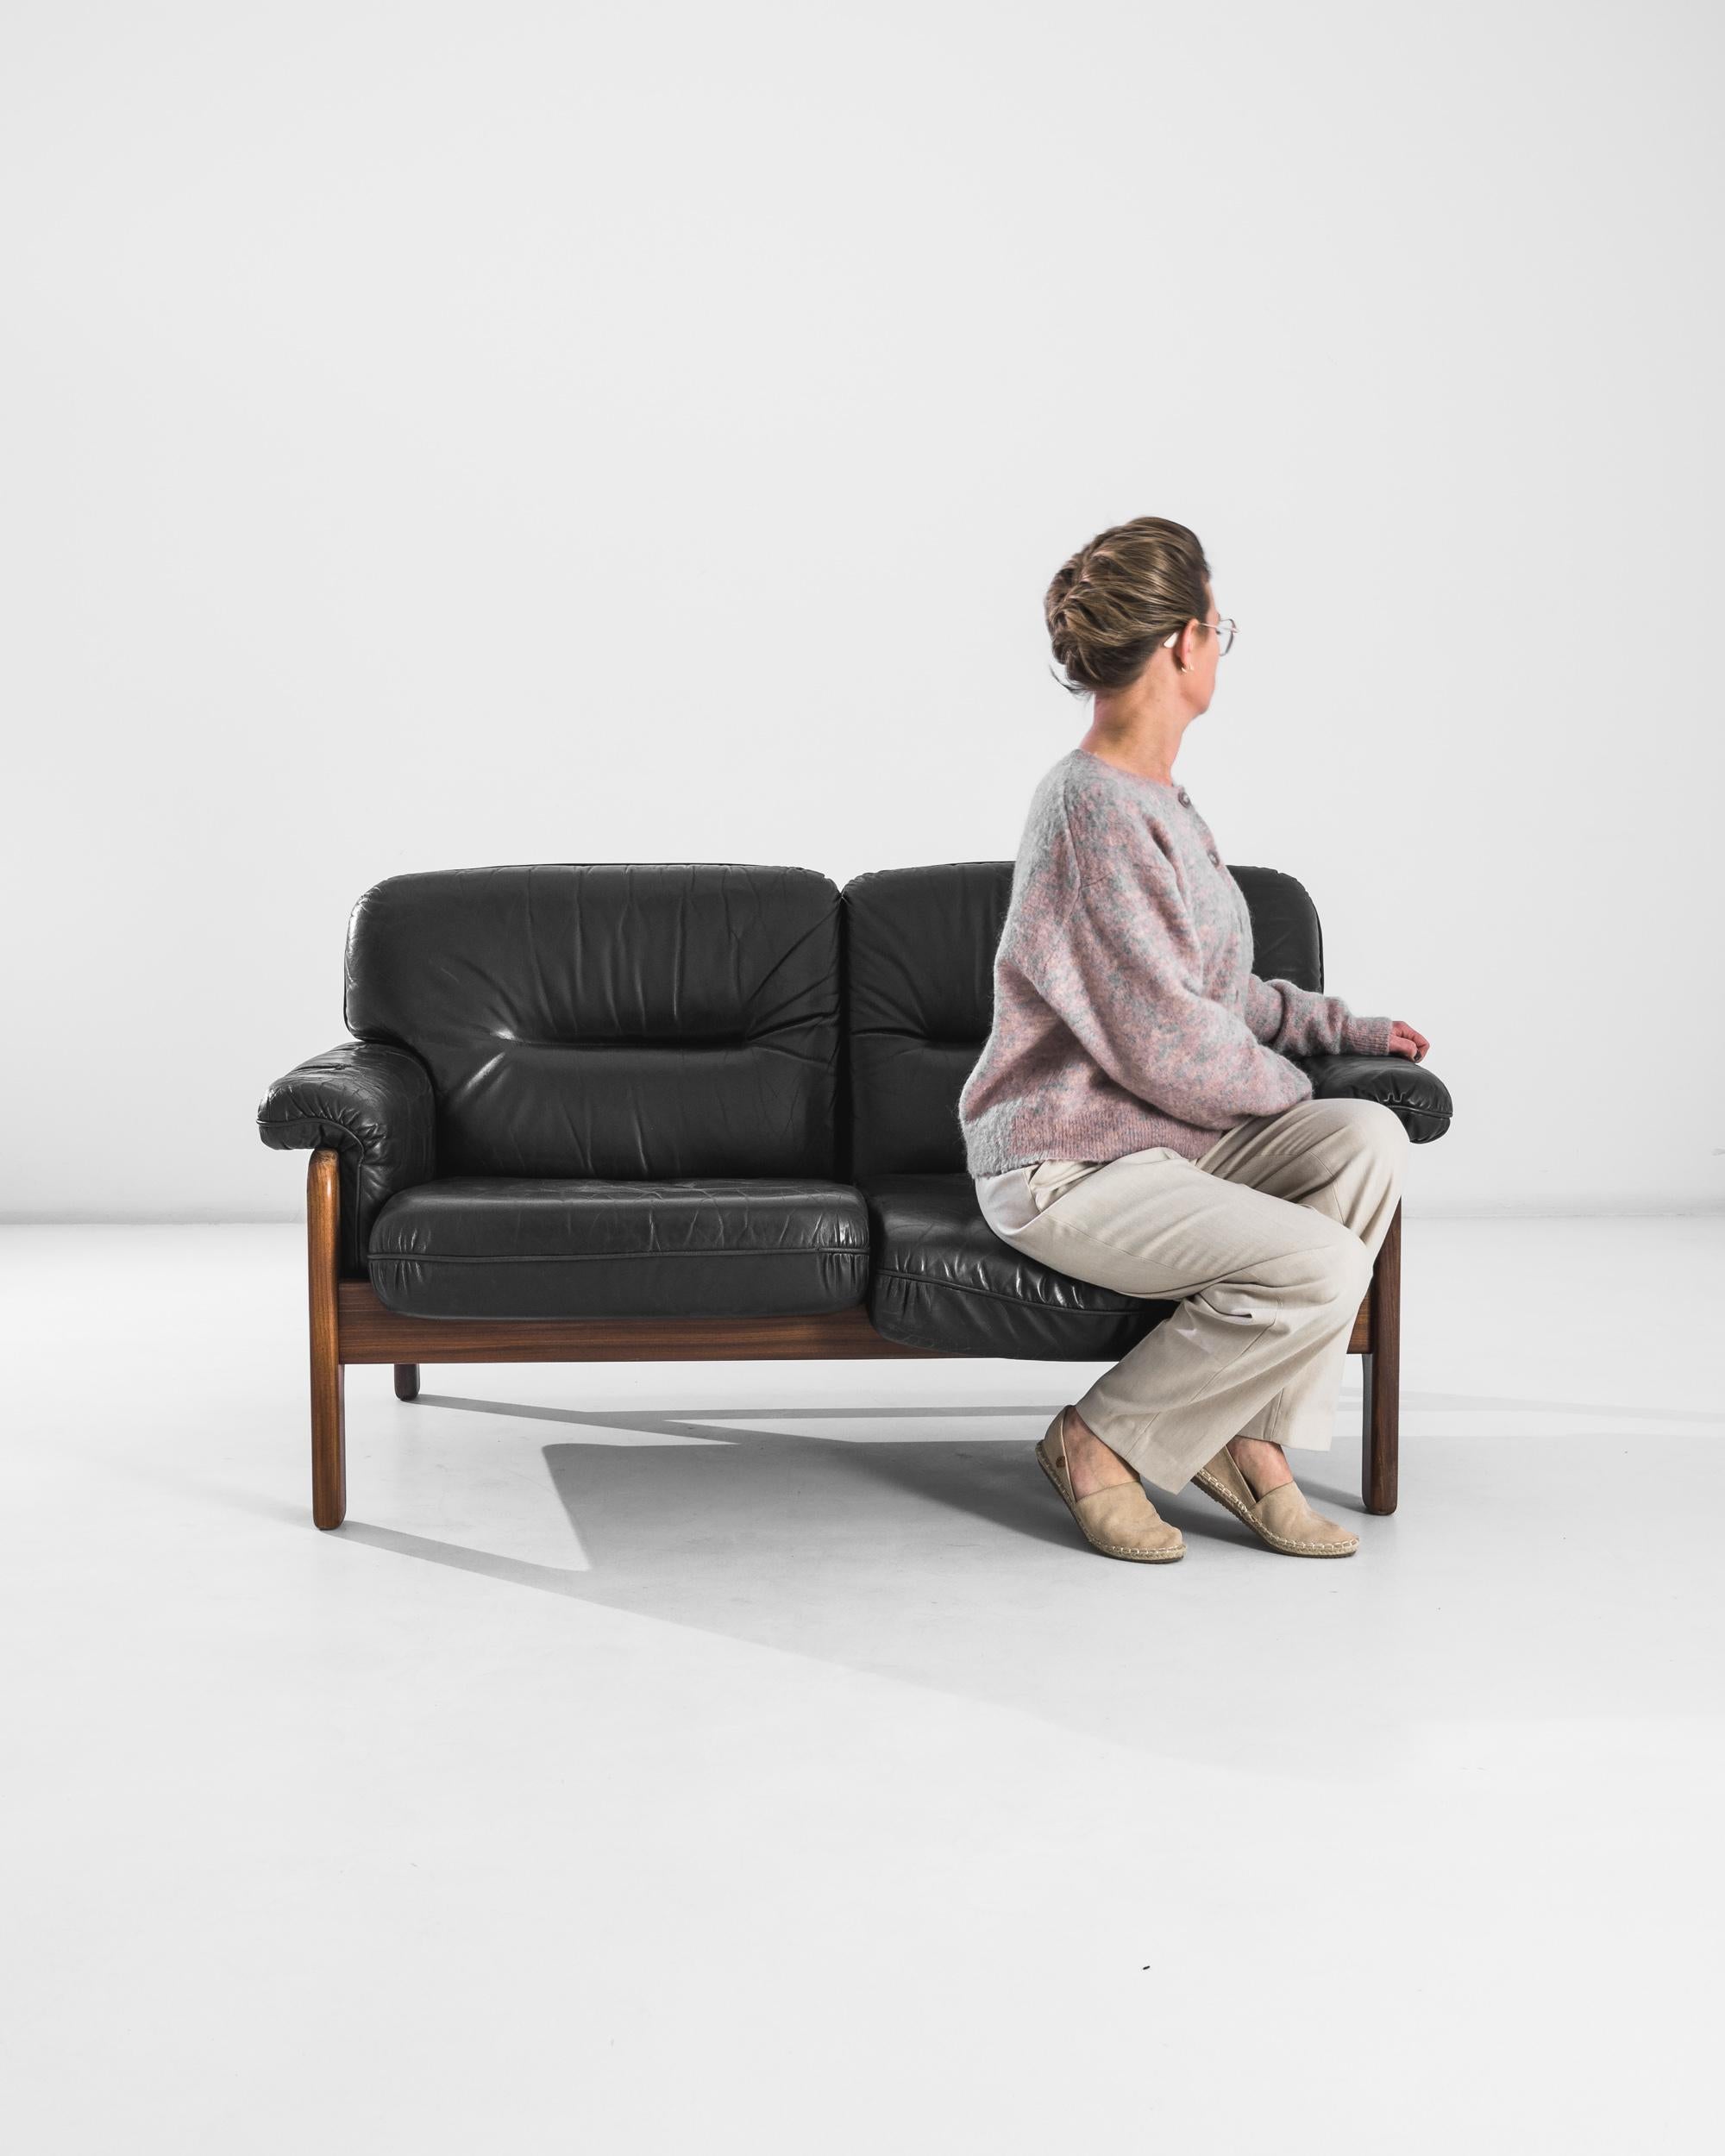 Dieses Ledersofa setzt sowohl in einem modernen Büro als auch in einem eleganten Wohnzimmer einen raffinierten Akzent. Die tiefschwarzen Lederkissen des im 20. Jahrhundert in Dänemark hergestellten Stuhls bieten eine luxuriöse Sitzfläche, die durch